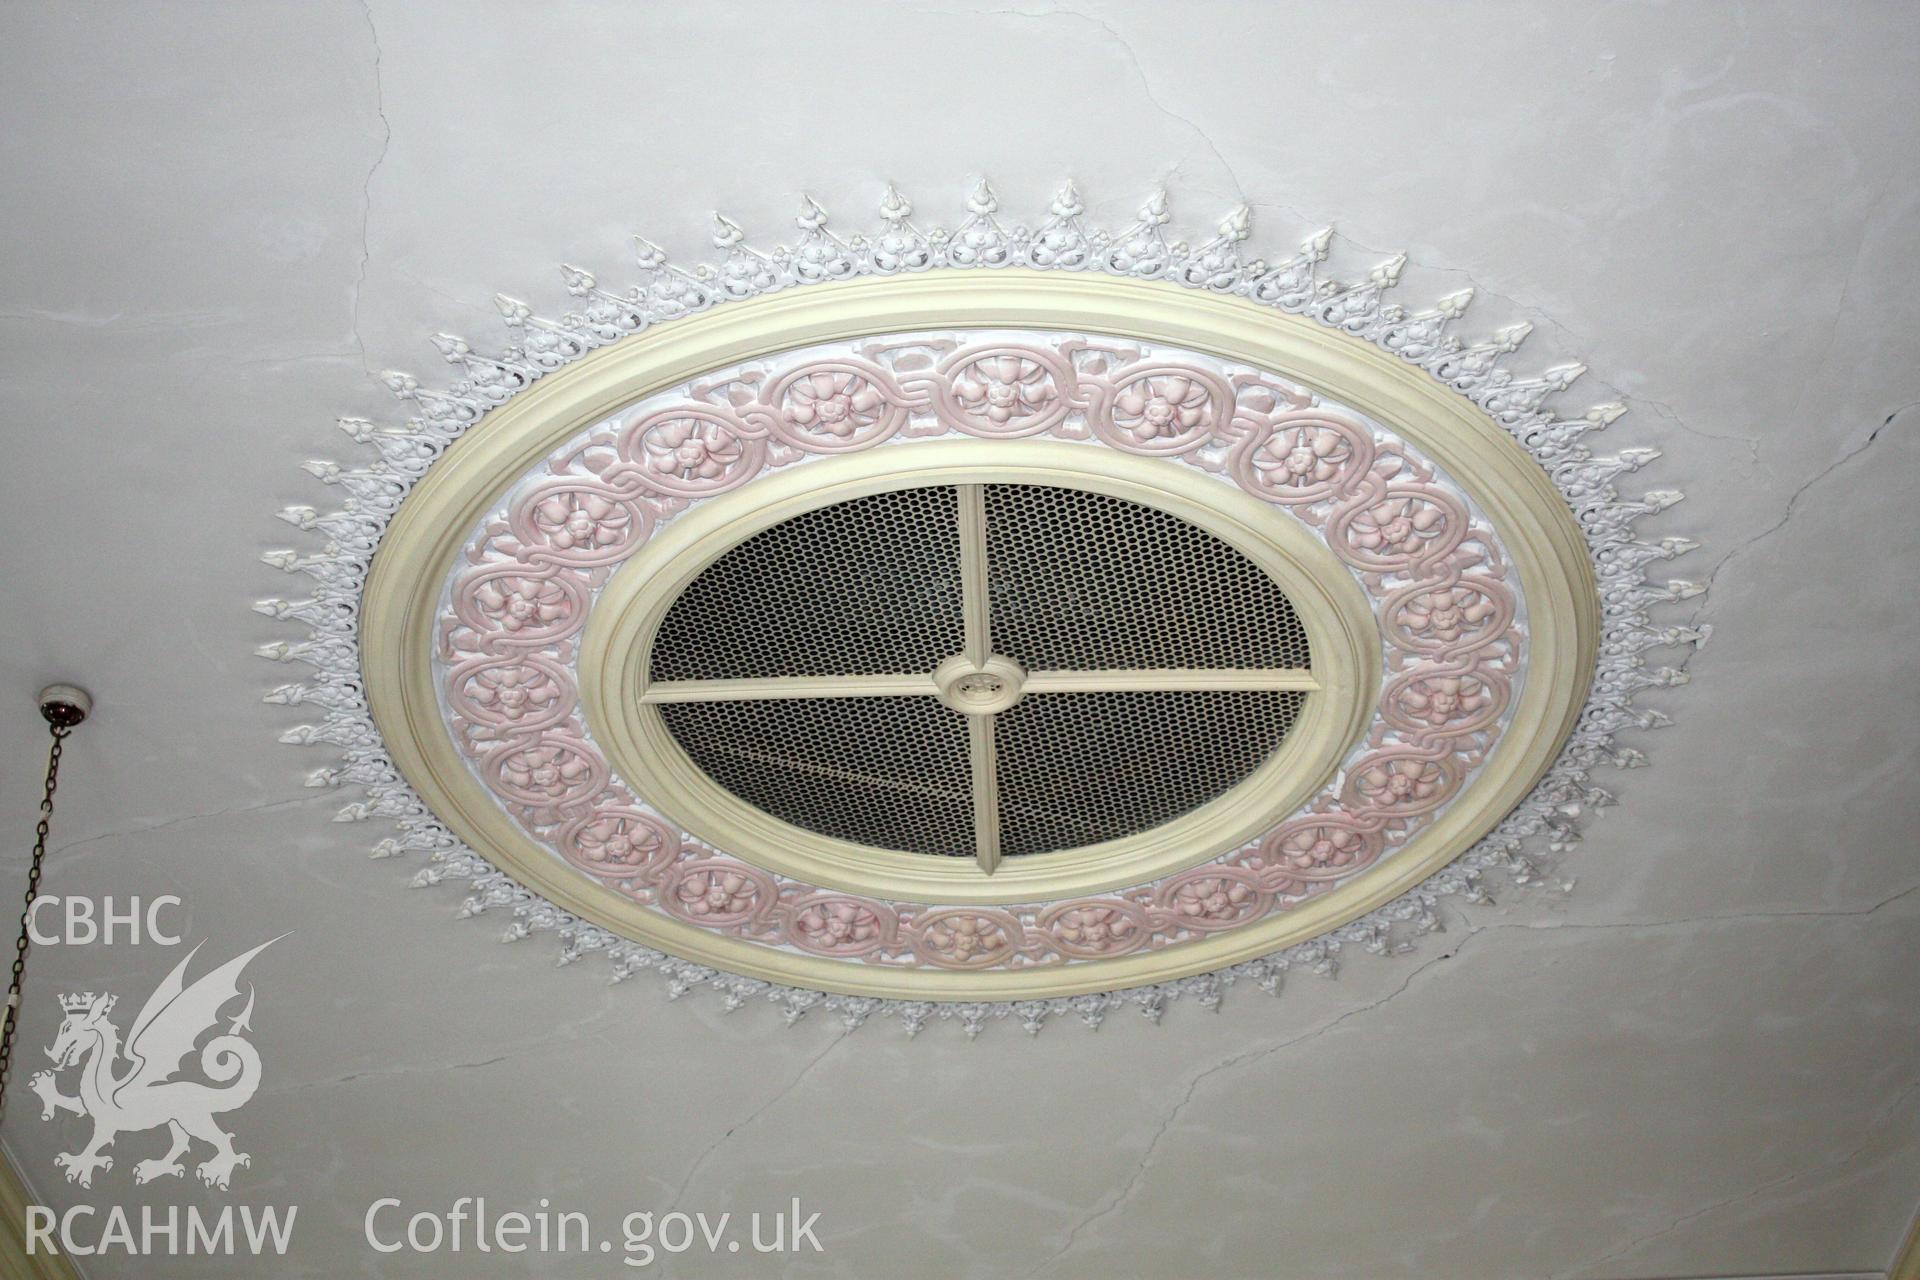 Soar chapel, detail of ventilation in ceiling.